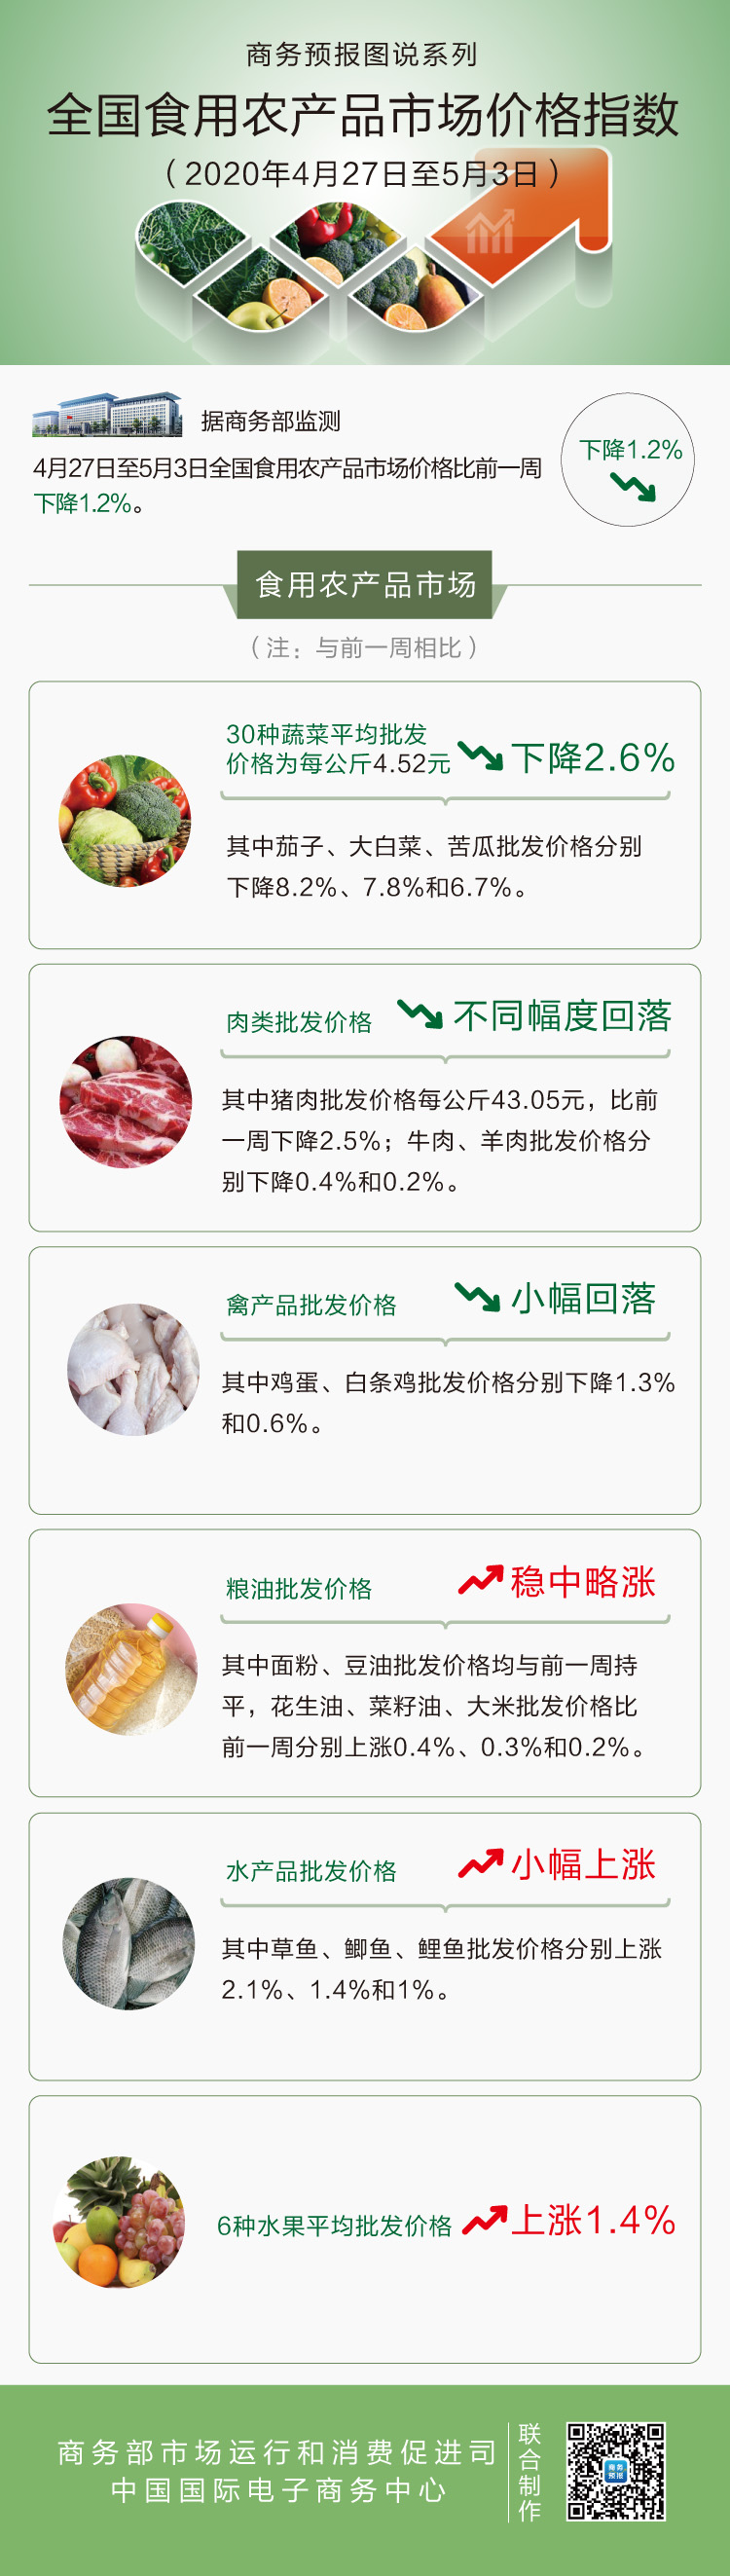 5月第1周食用农产品价格小幅回落 猪肉下降2.5%